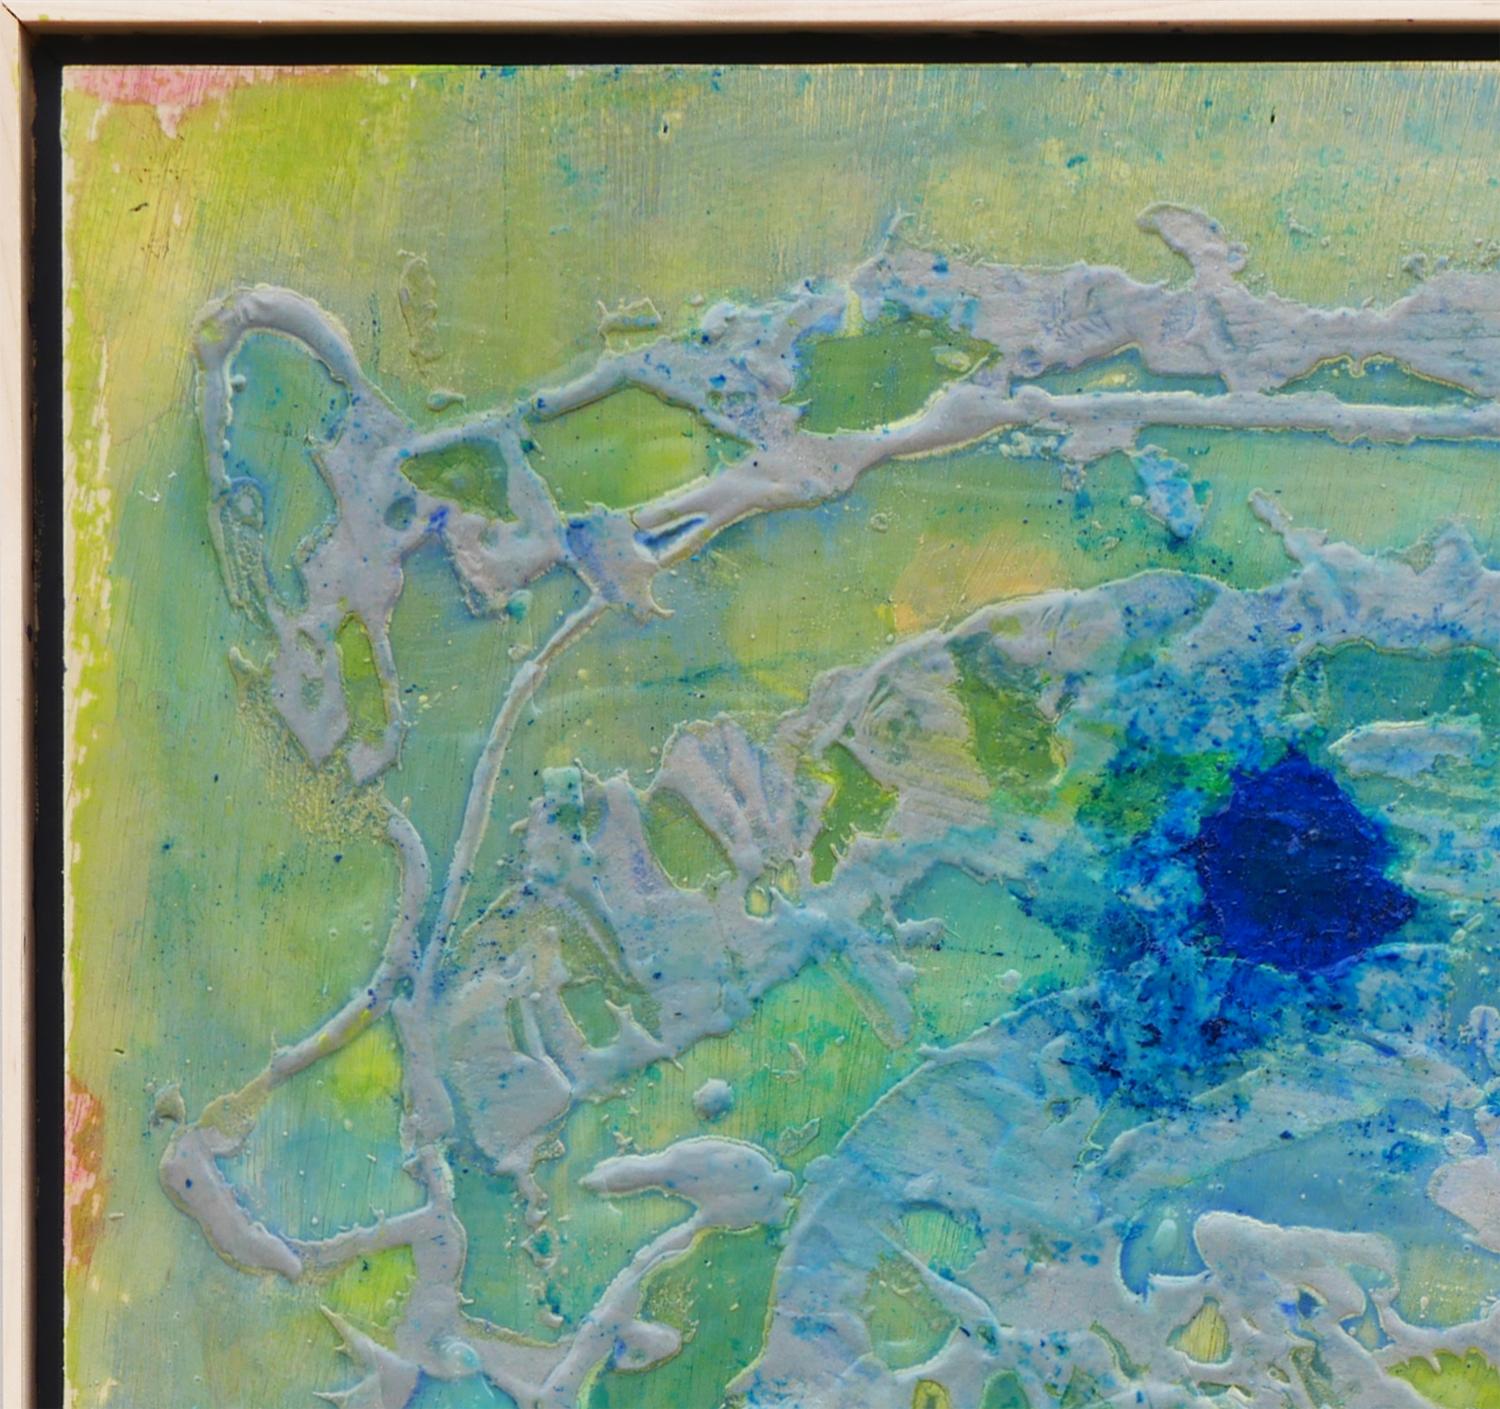 Abstraktes zeitgenössisches Gemälde in Blau- und Grüntönen des Künstlers Paul Reeves aus Houston, TX. Dieses Gemälde zeigt experimentelle Texturen aus Zement und ist mit mehreren Farbschichten überzogen, die blaue und grüne Farbtöne erzeugen.